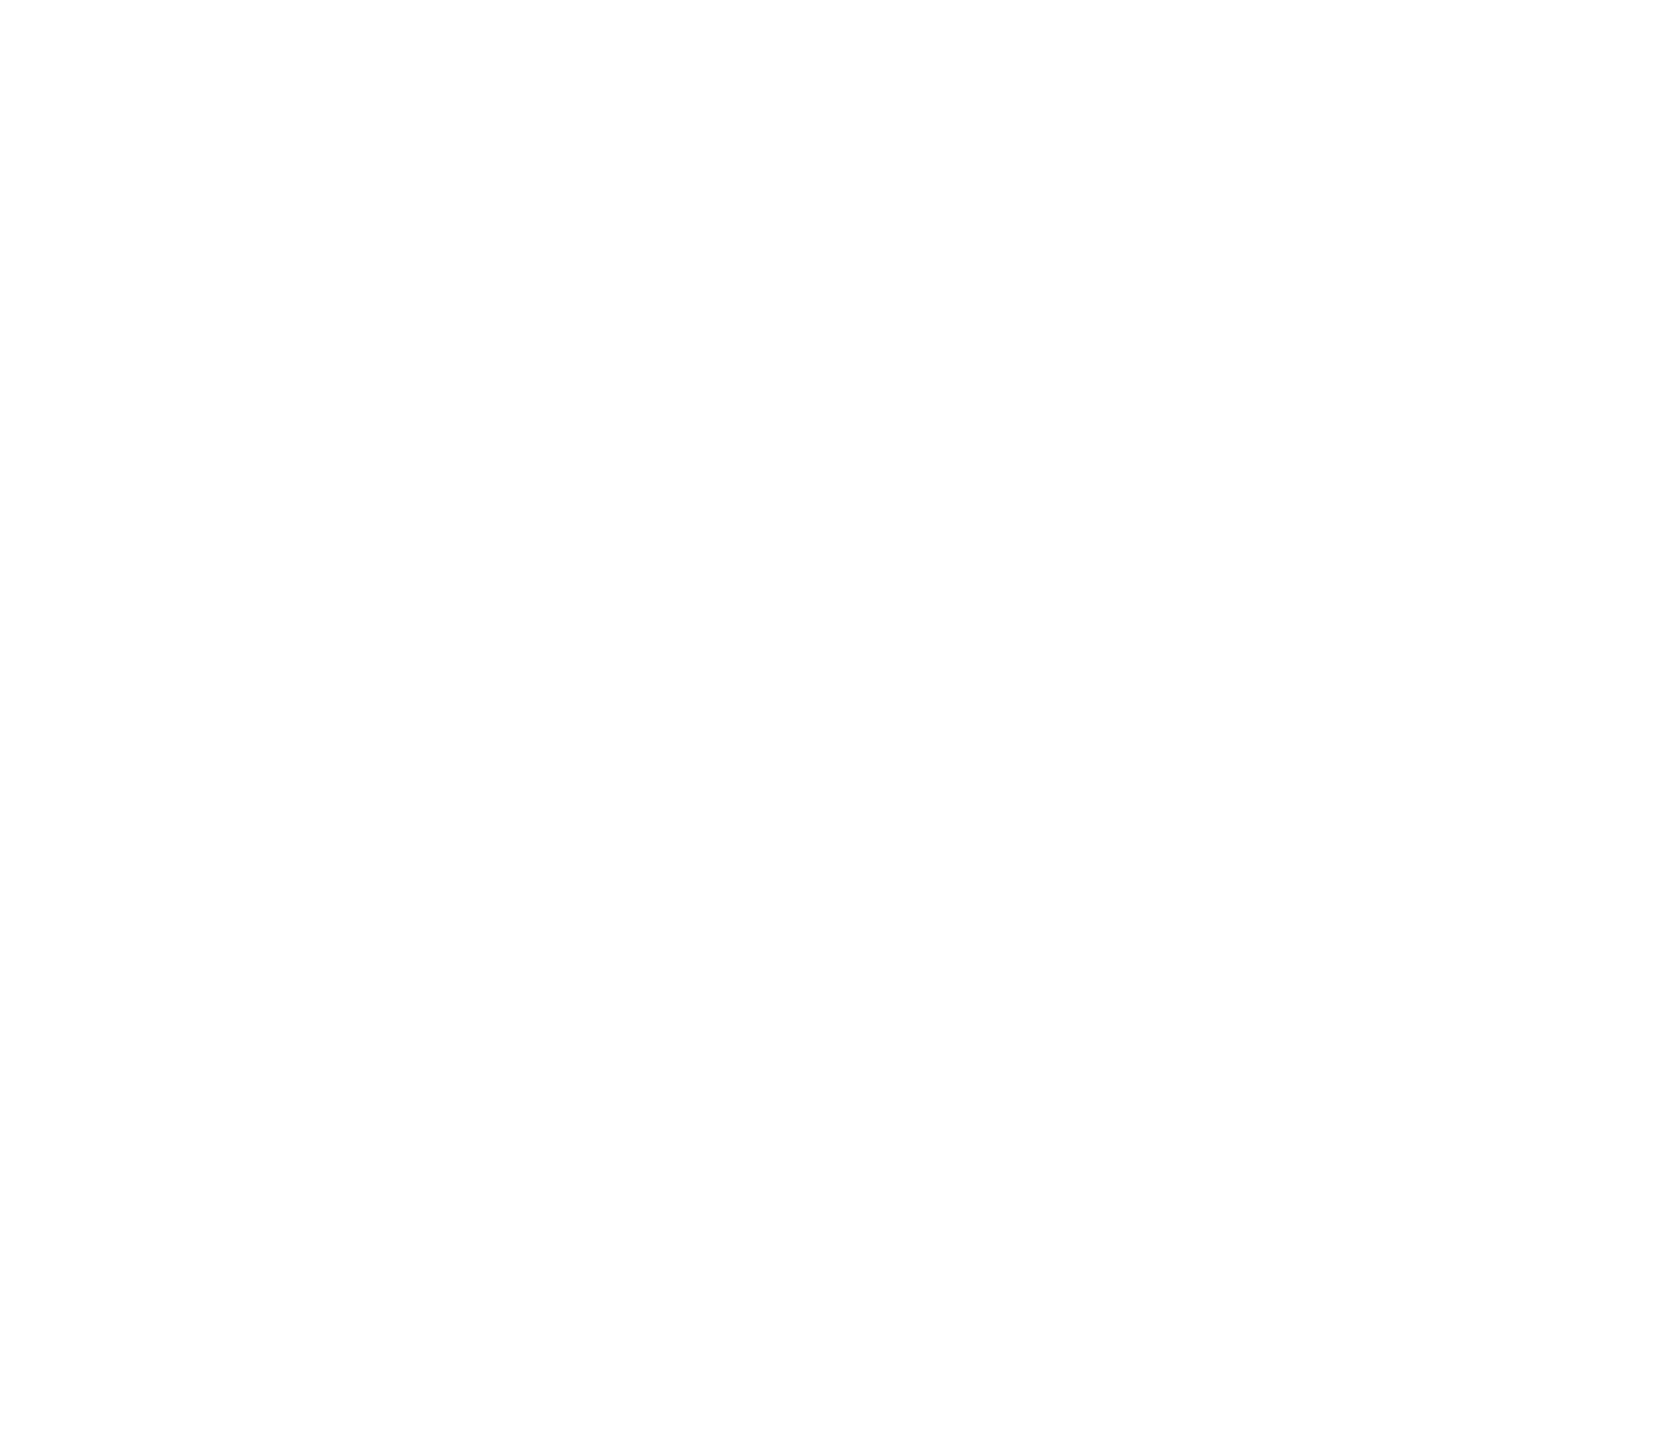 Плюмерия, иллюстрация из книги Анны Зворыкиной «ОТ ГВОЗДИКИ ДО САНДАЛА. ОЛЬФАКТОРНАЯ АЗБУКА И ПУТЕВОДИТЕЛЬ ПО МИРУ НАТУРАЛЬНЫХ АРОМАТОВ»